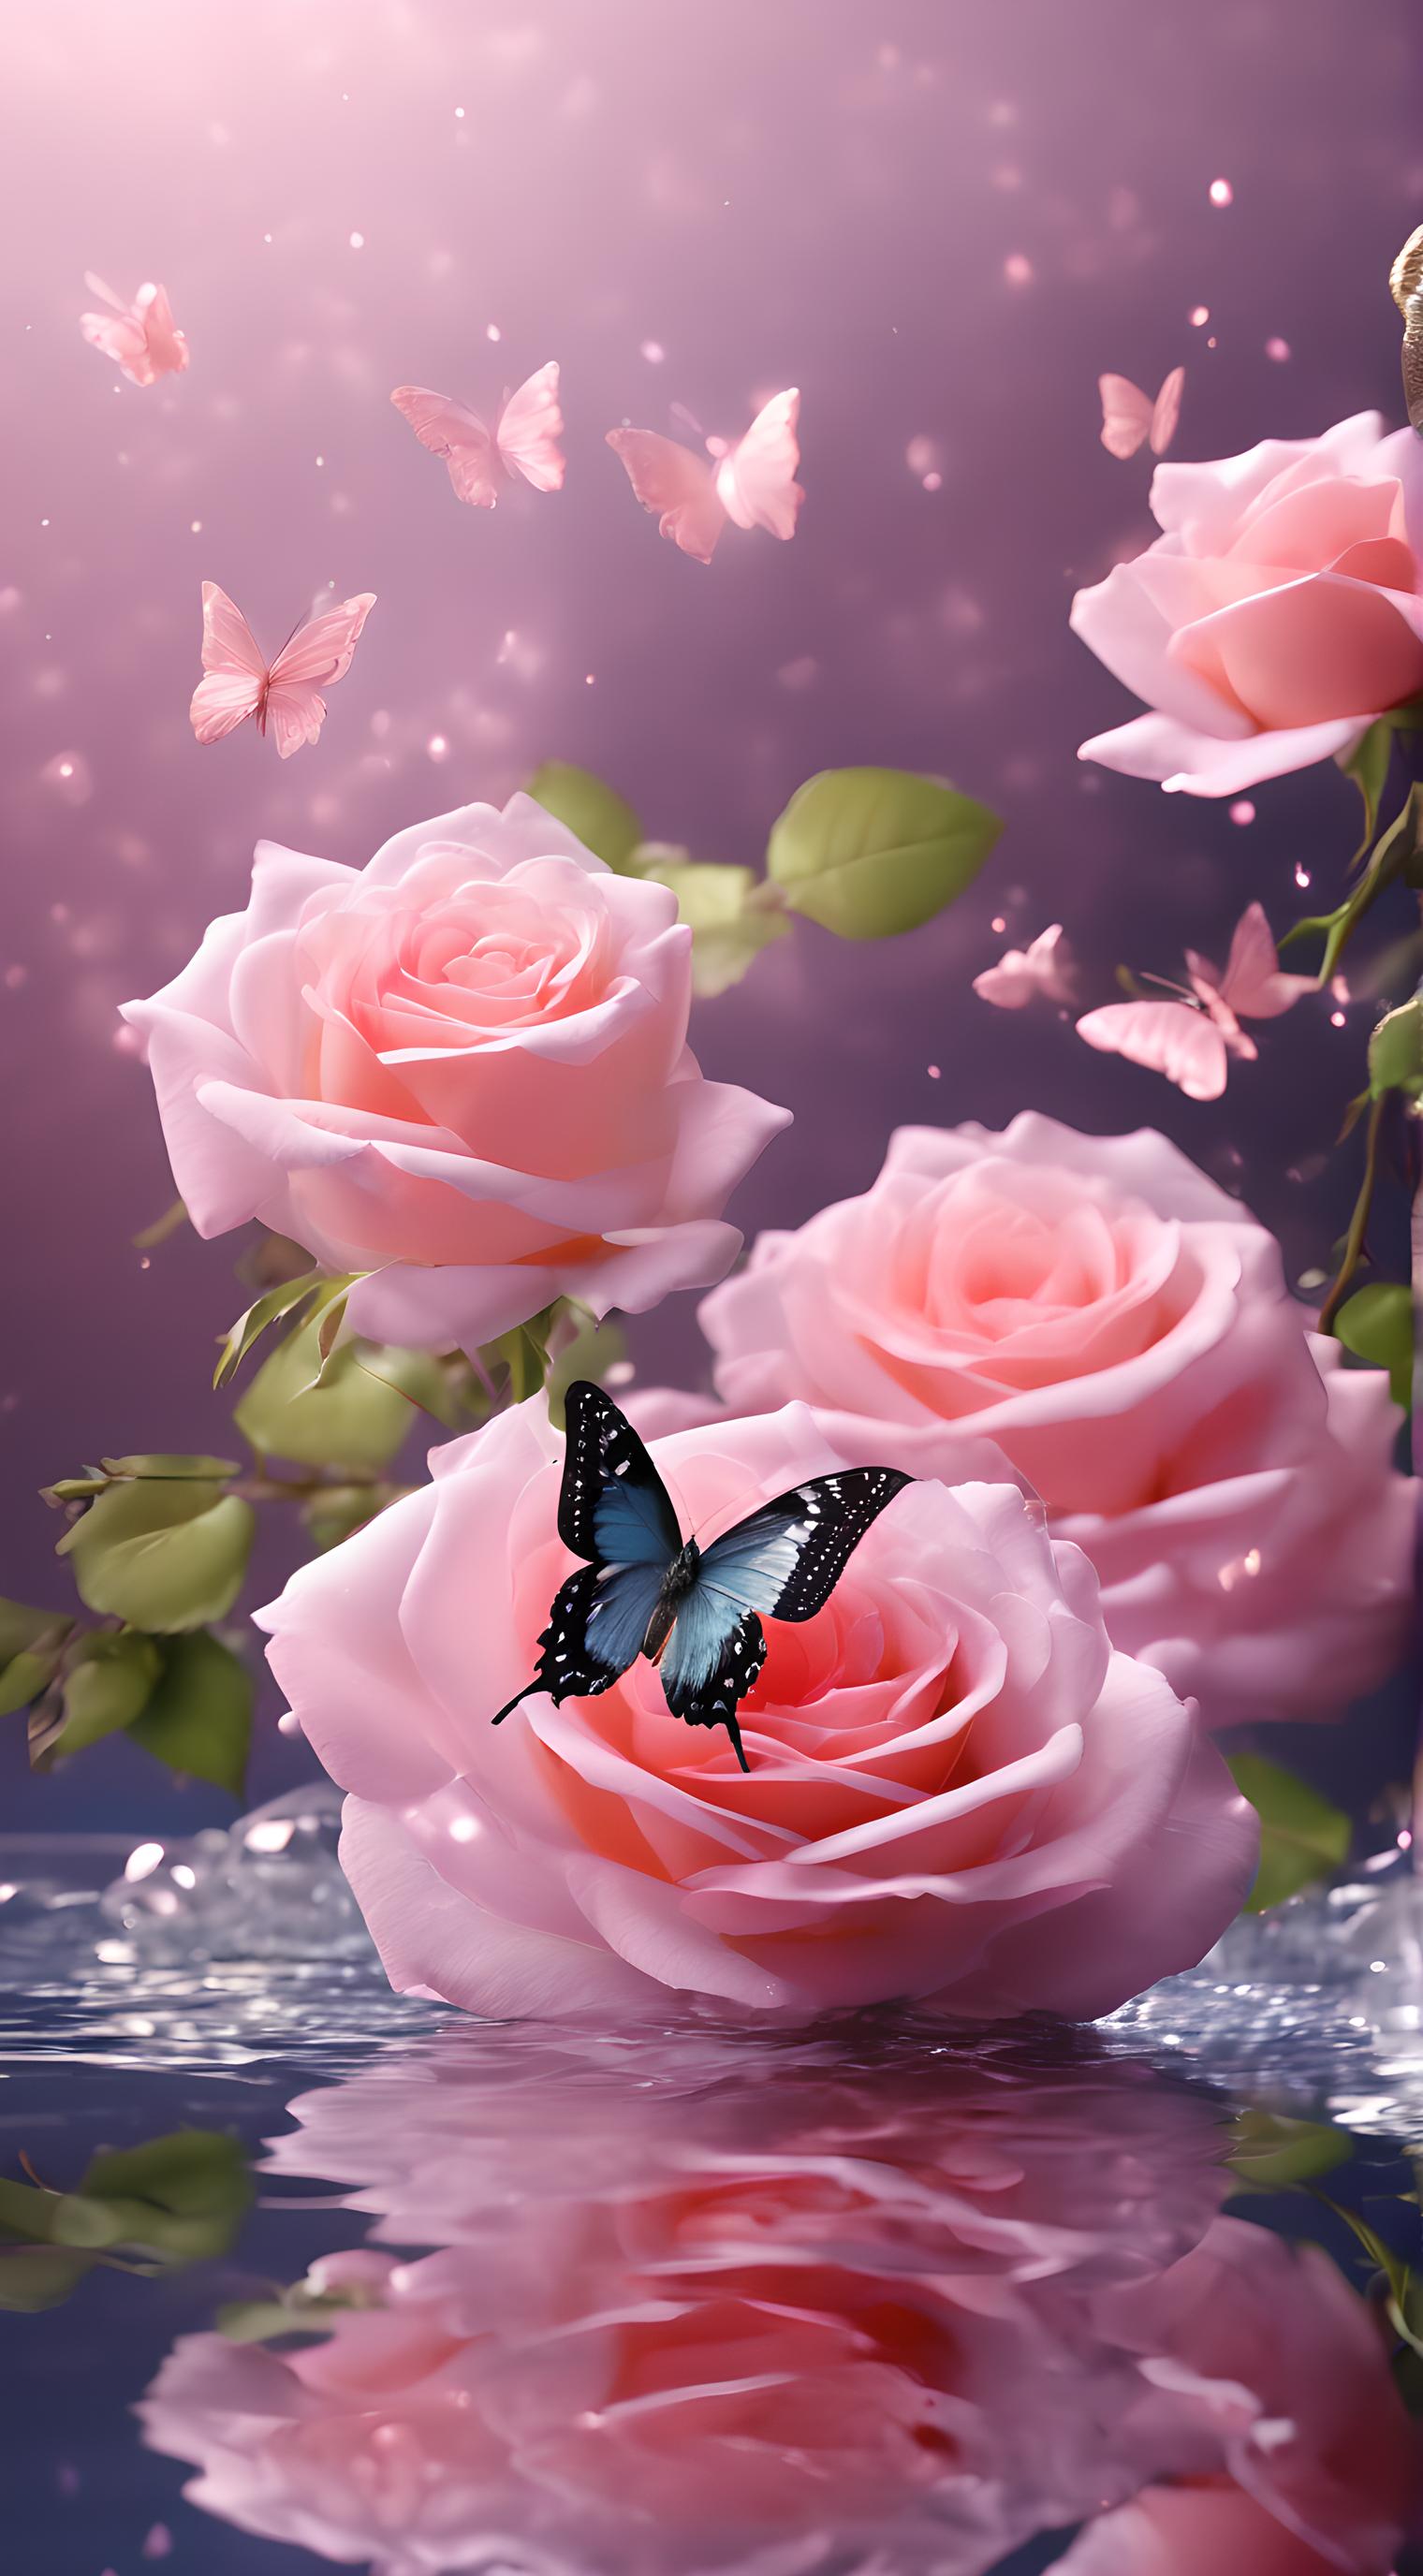 蝴蝶与玫瑰